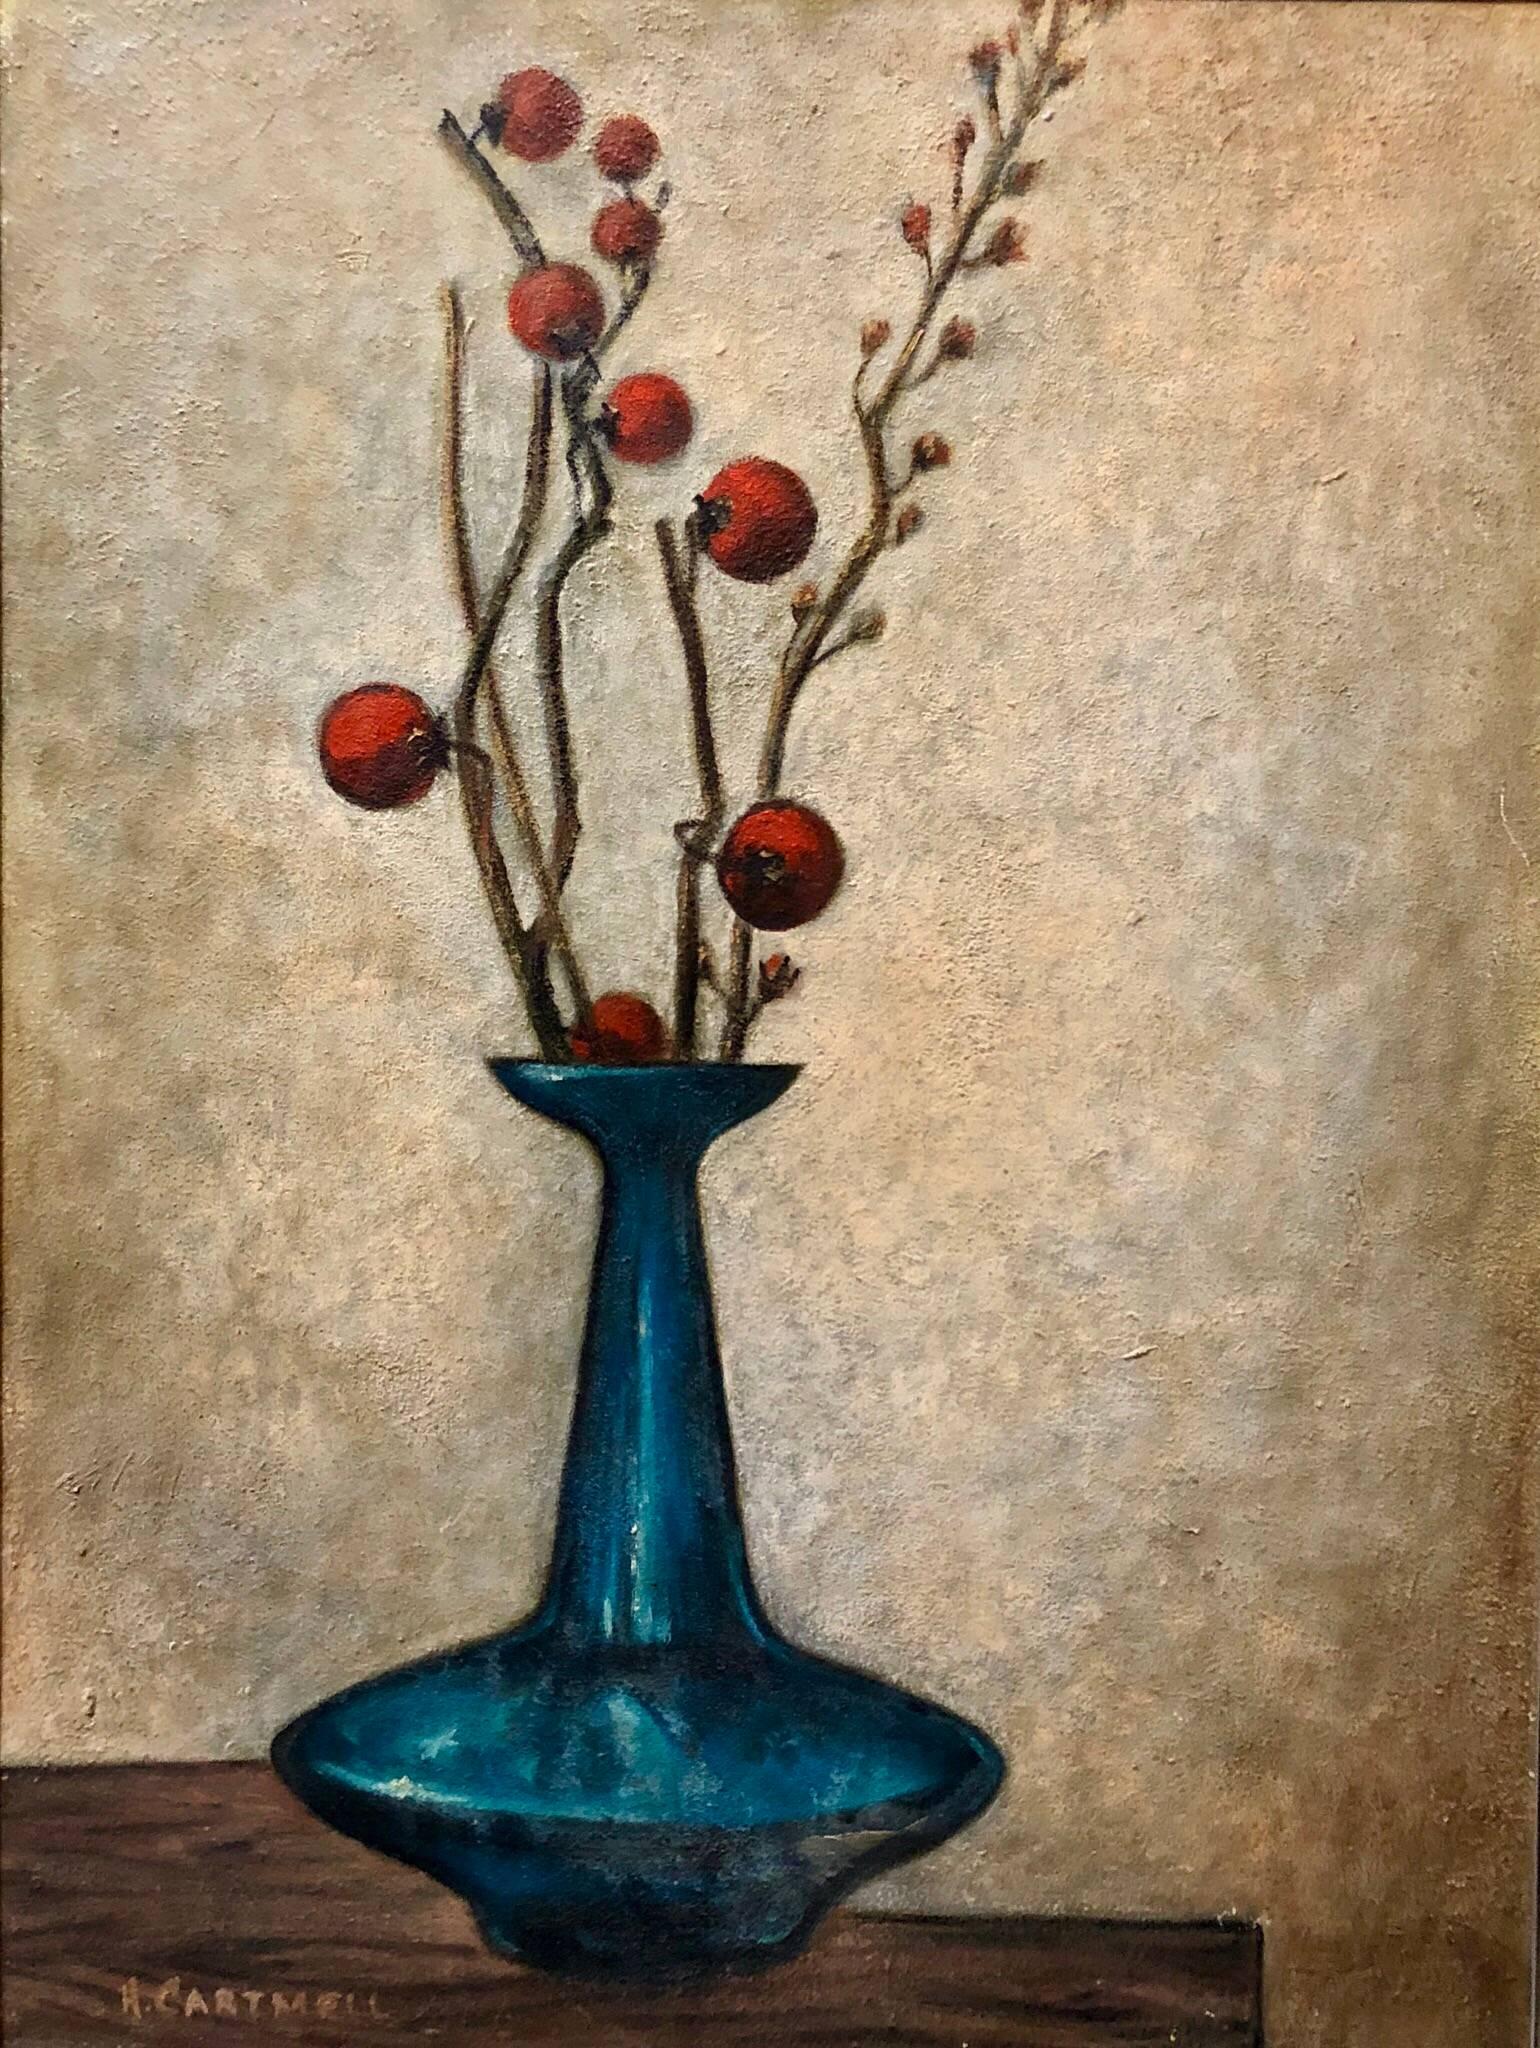 Modernist Floral Arrangement in a Mod Vase 1957 Oil Painting